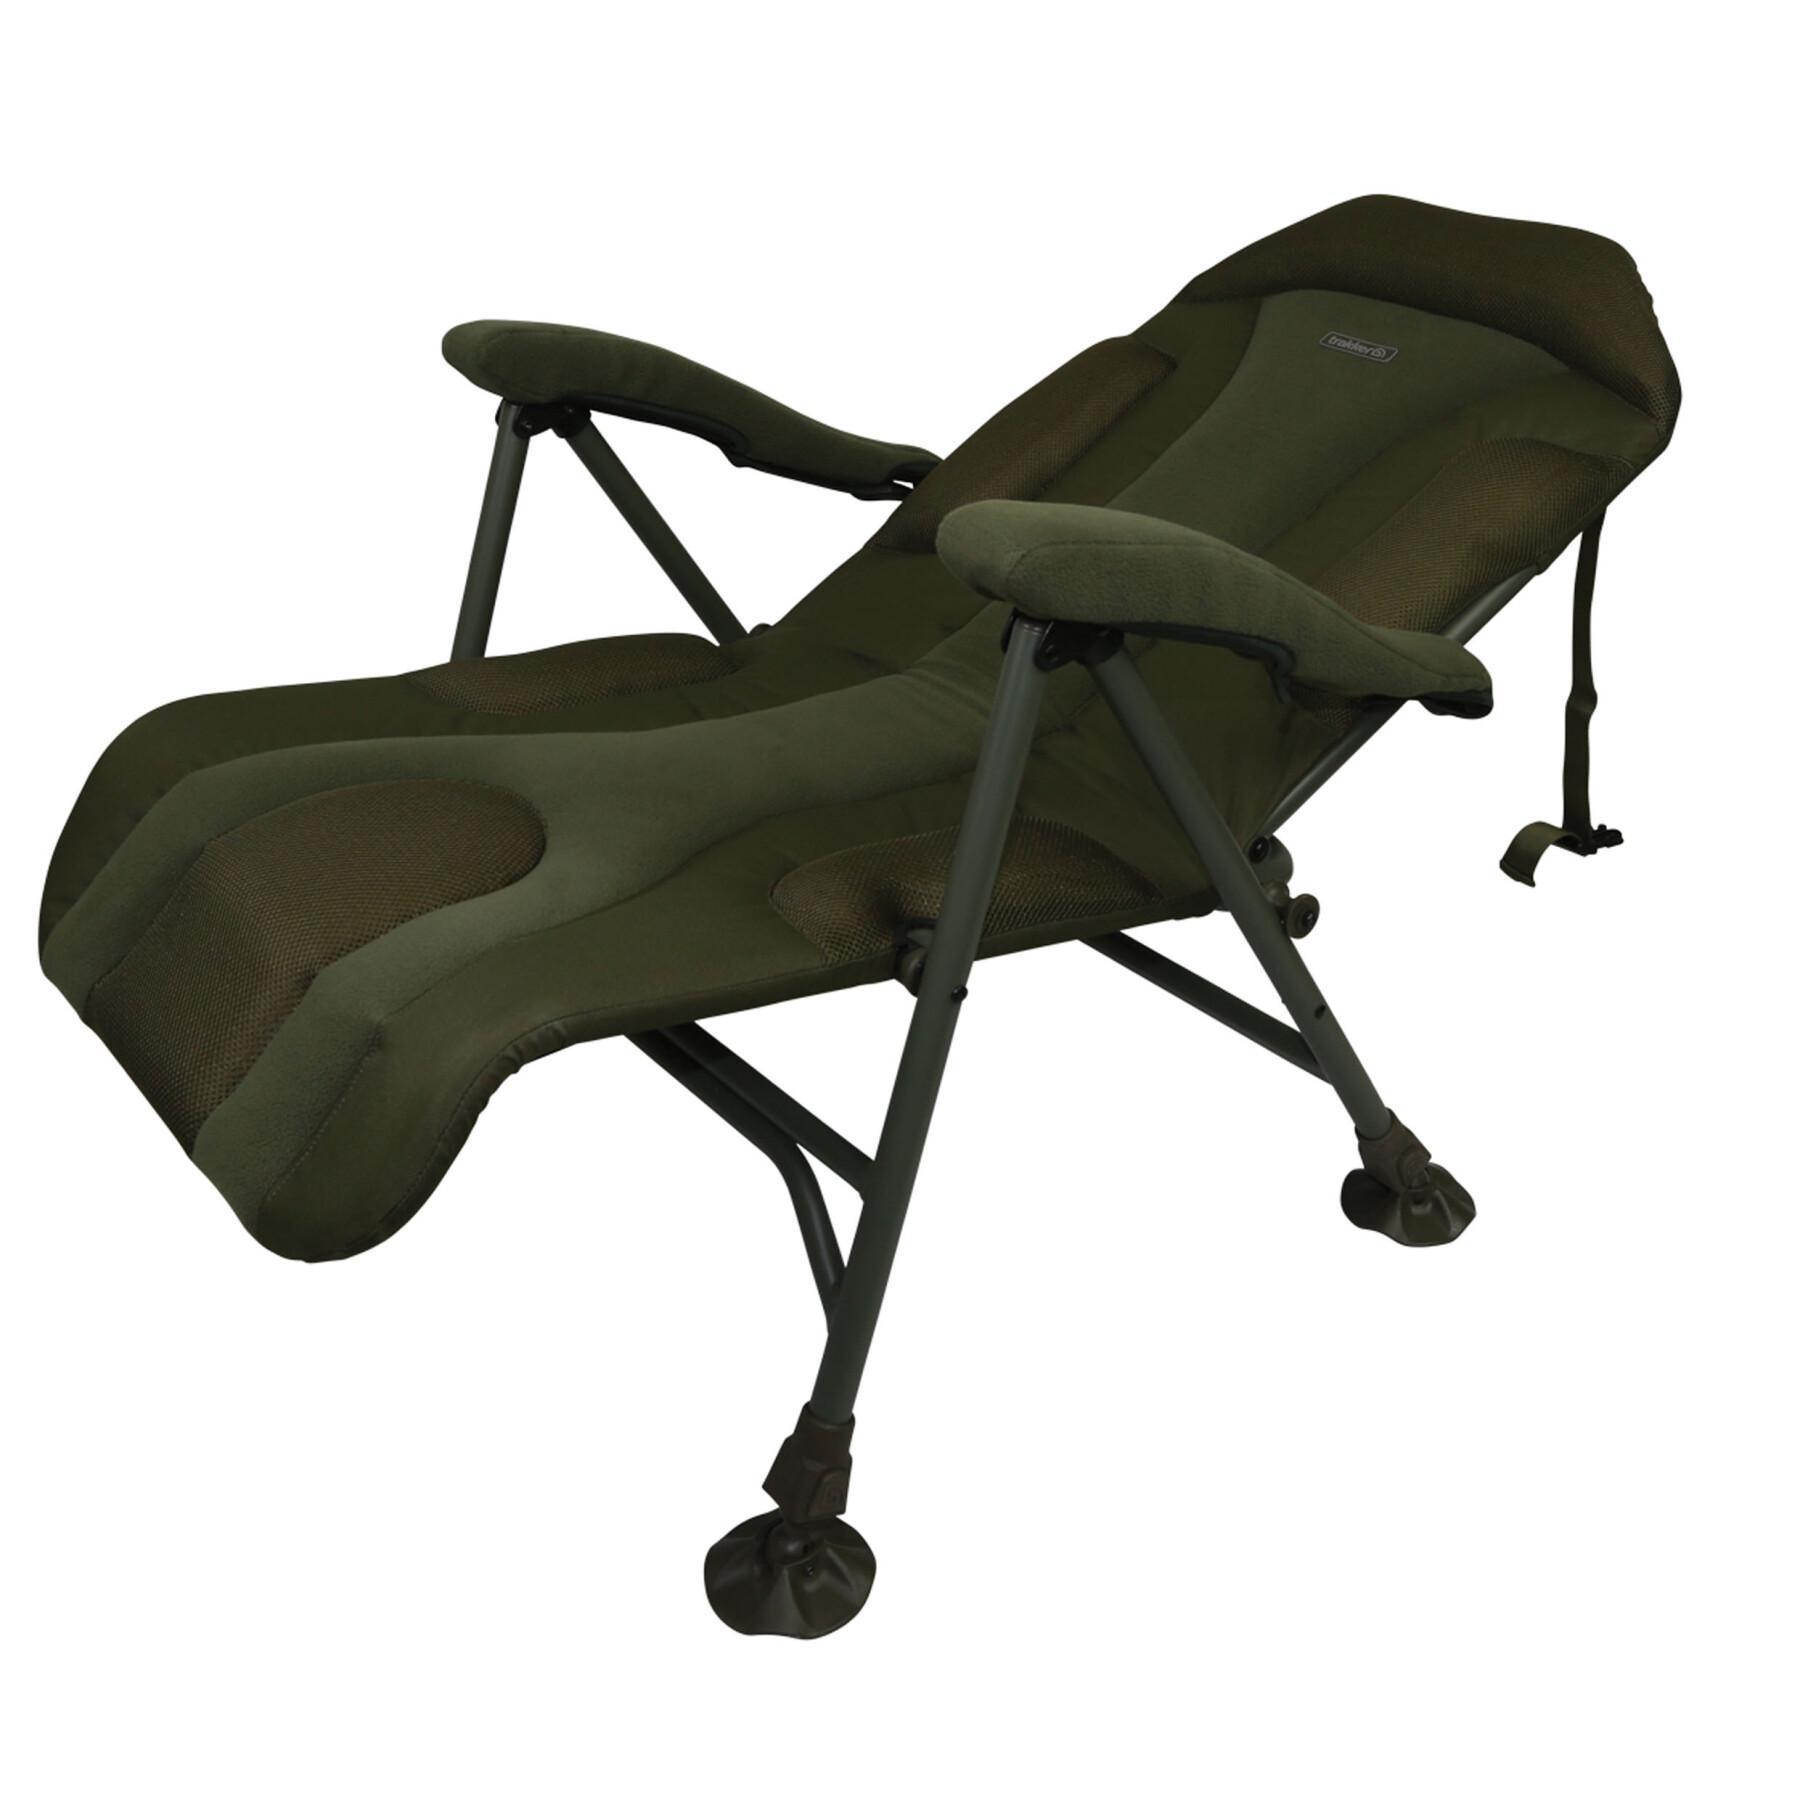 Level chair Trakker levelite long-back recliner